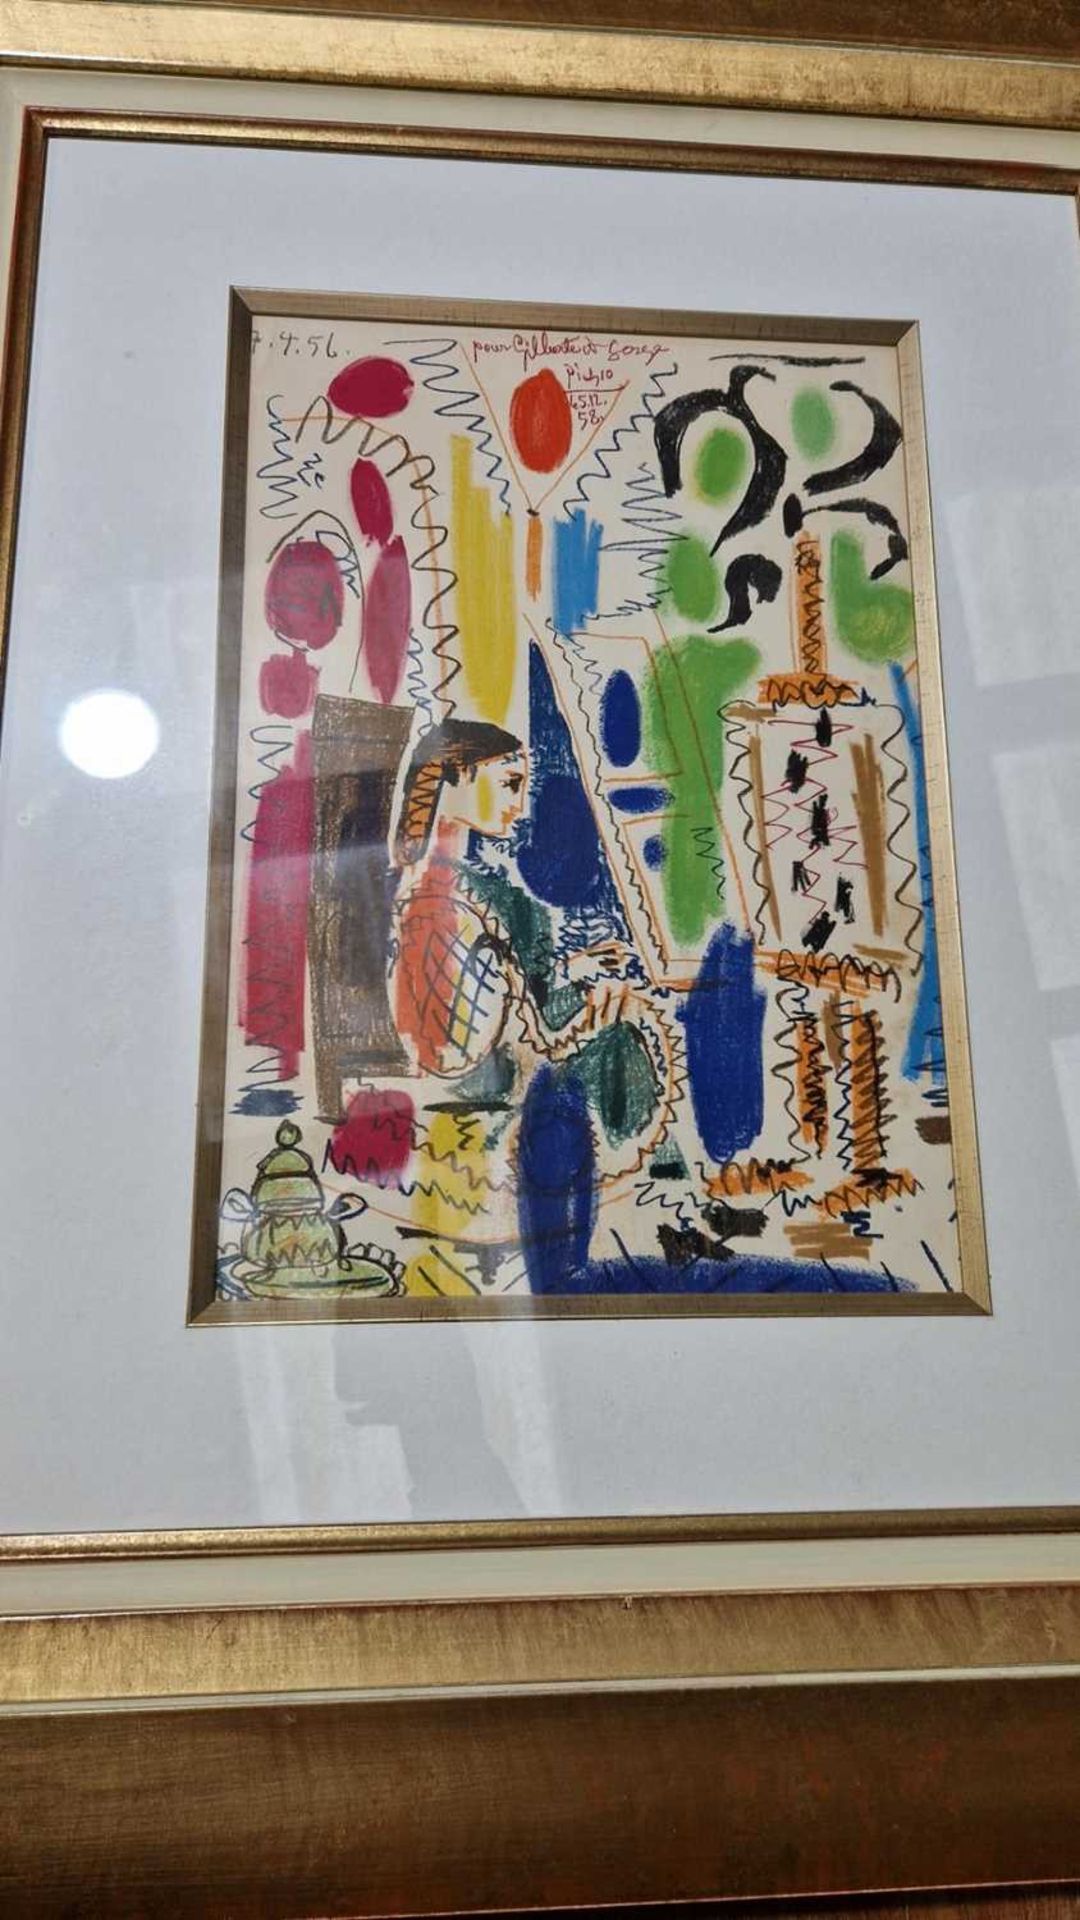 After Pablo Picasso (Spanish, 1881 - 1973), L'Atelier de Cannes (1958), colour lithograph, 43 x 30 c - Image 15 of 17